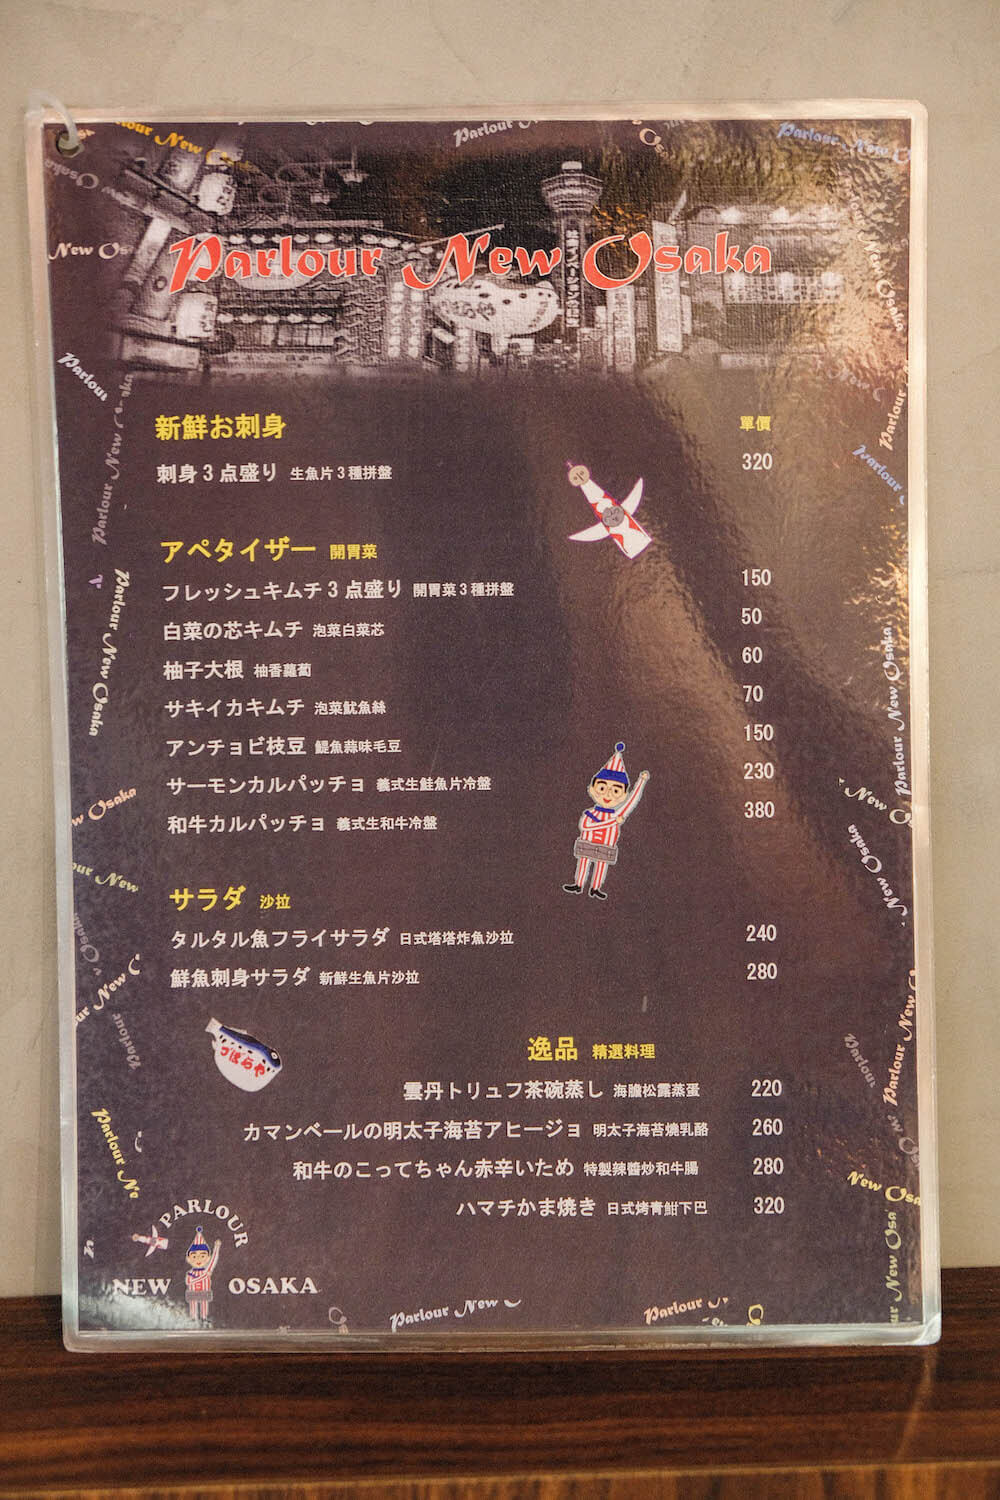 國父紀念館站日式居酒屋「會客室 新大阪Parlour New Osaka」菜單